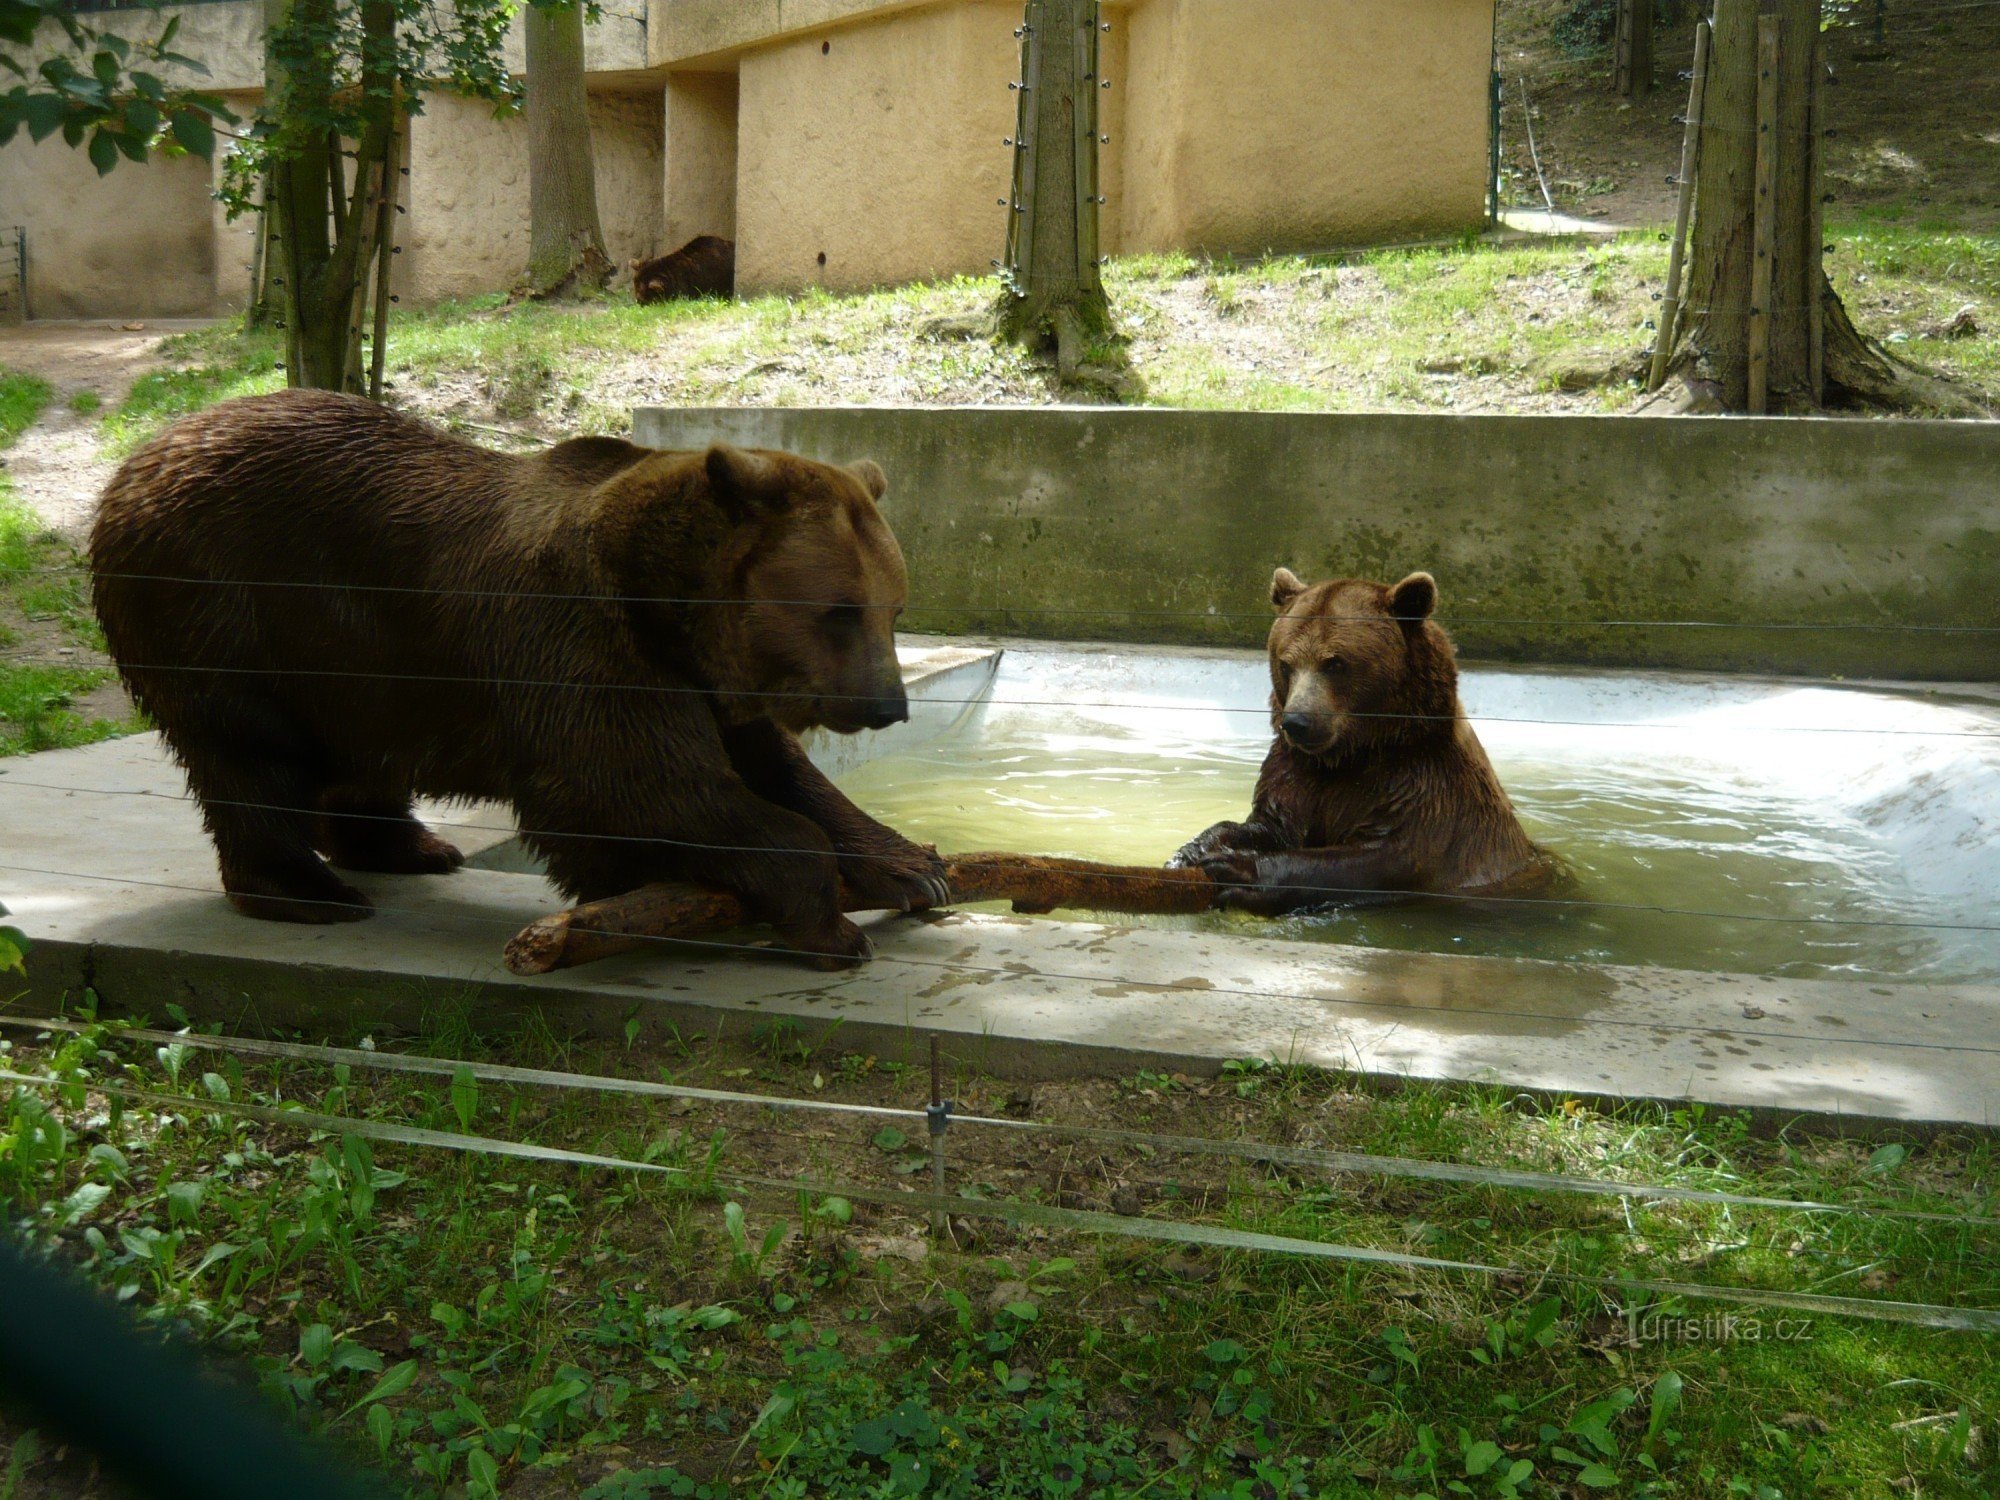 Water antics of the bear siblings